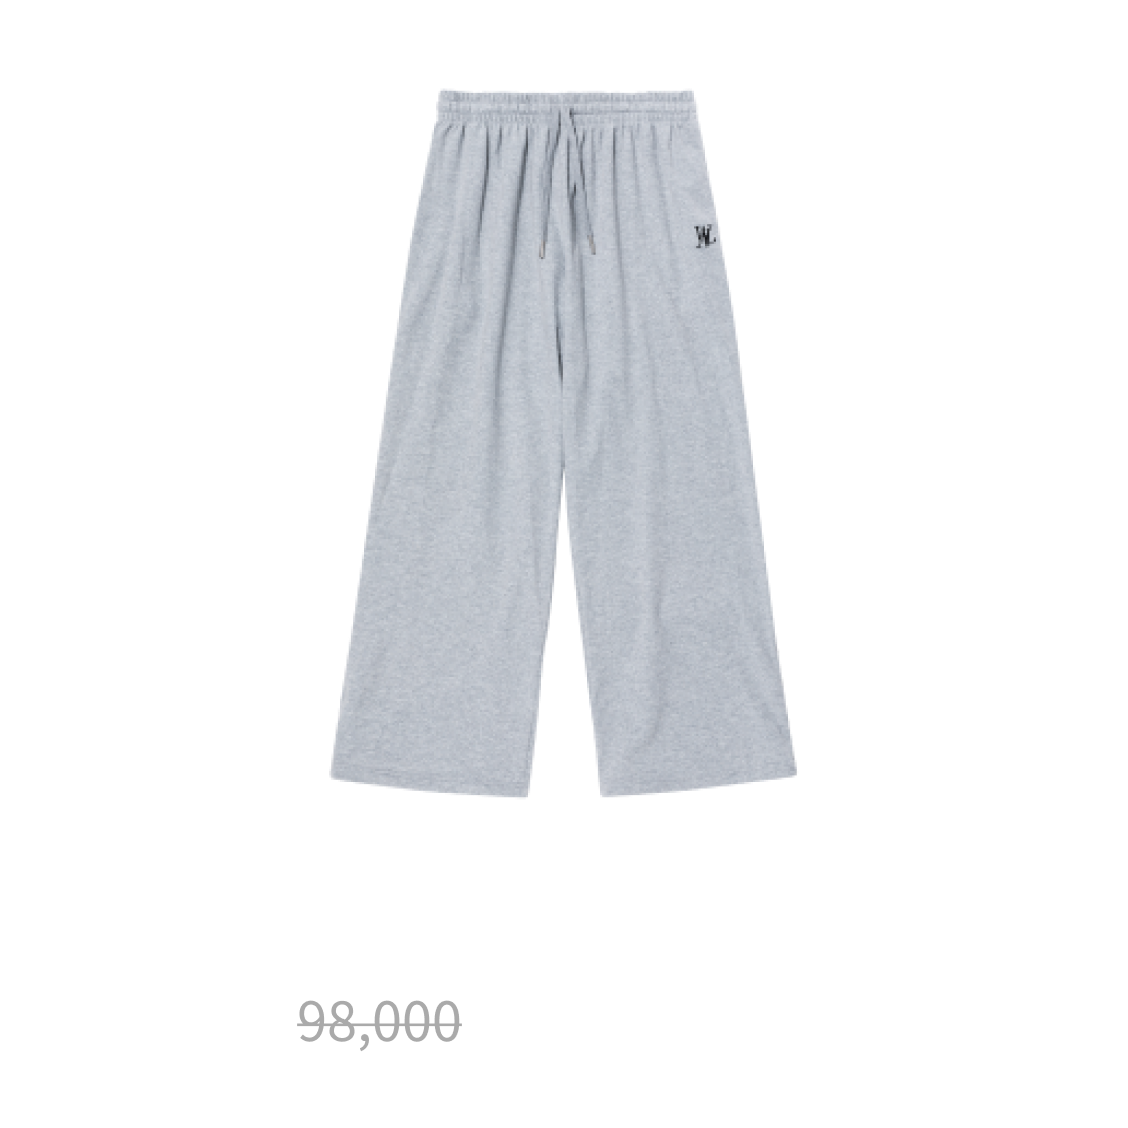 Sparkling wide pants - MELANGE GREY